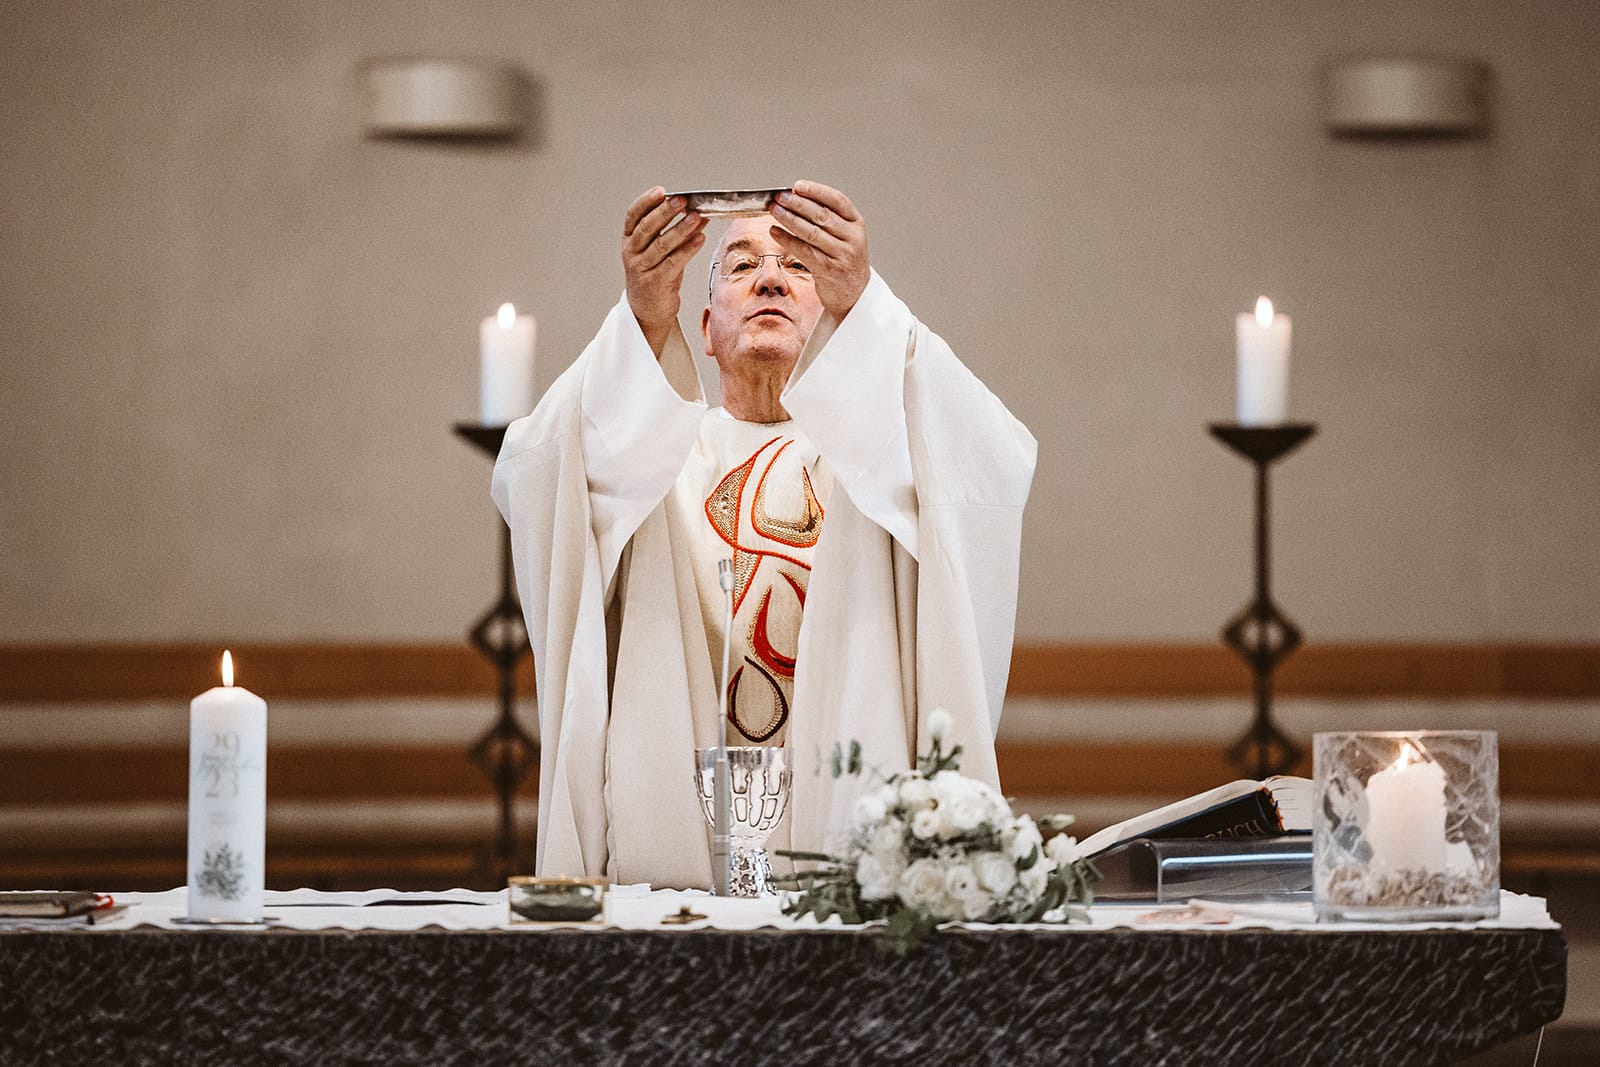 St. Marien Witten Hochzeitsfotograf - Priester salbt Brot und betet